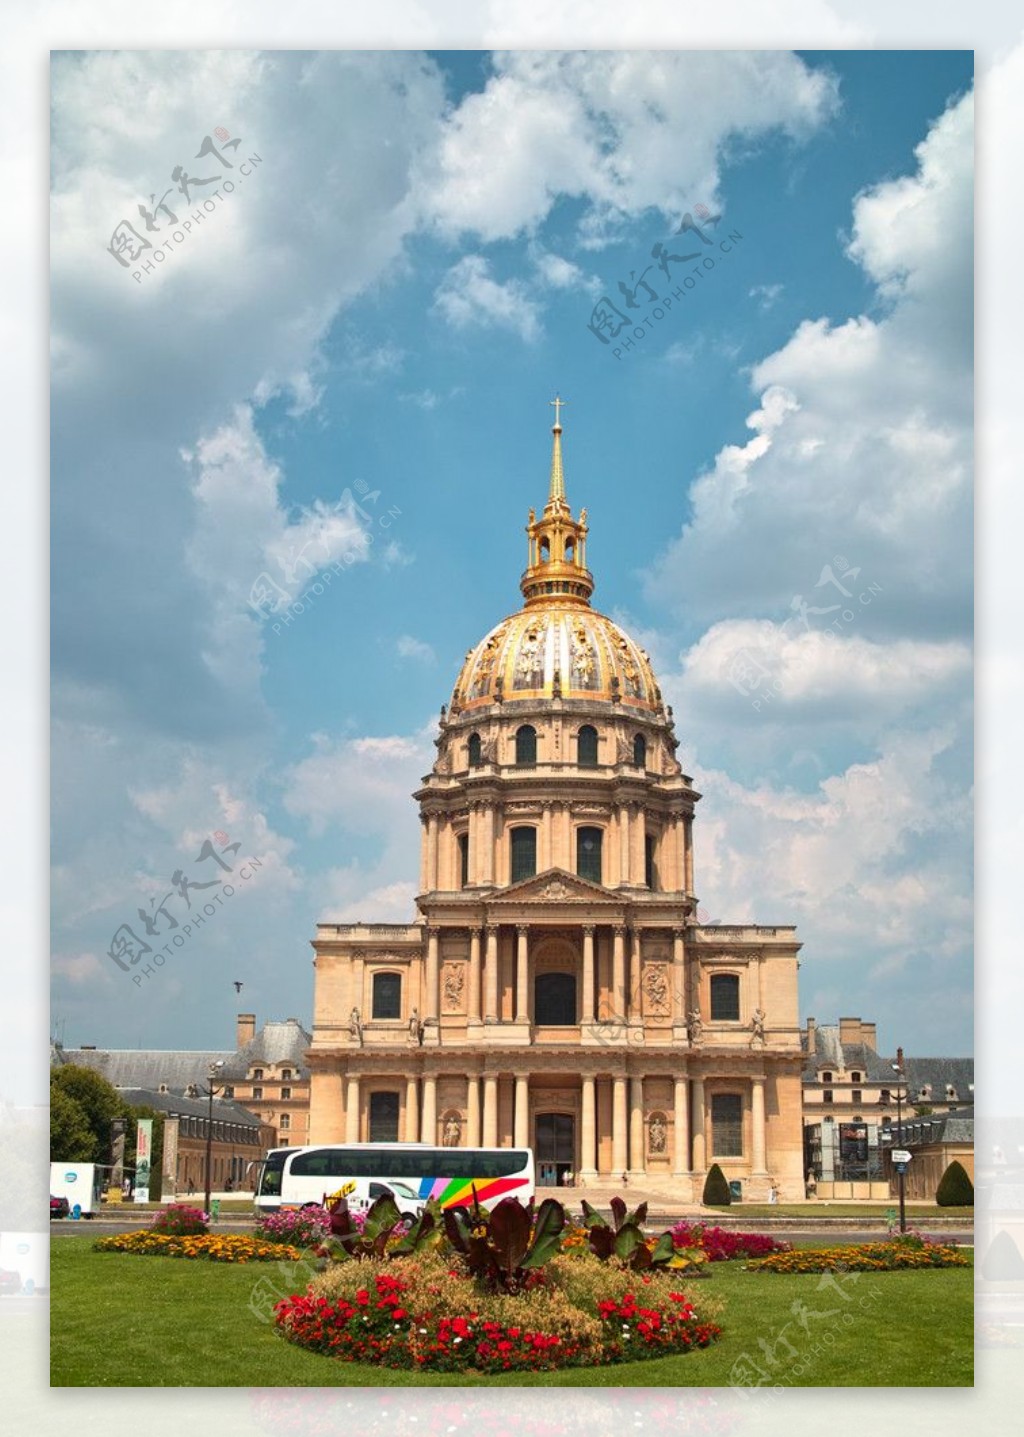 巴黎巴黎榮軍院拿破崙陵寢图片